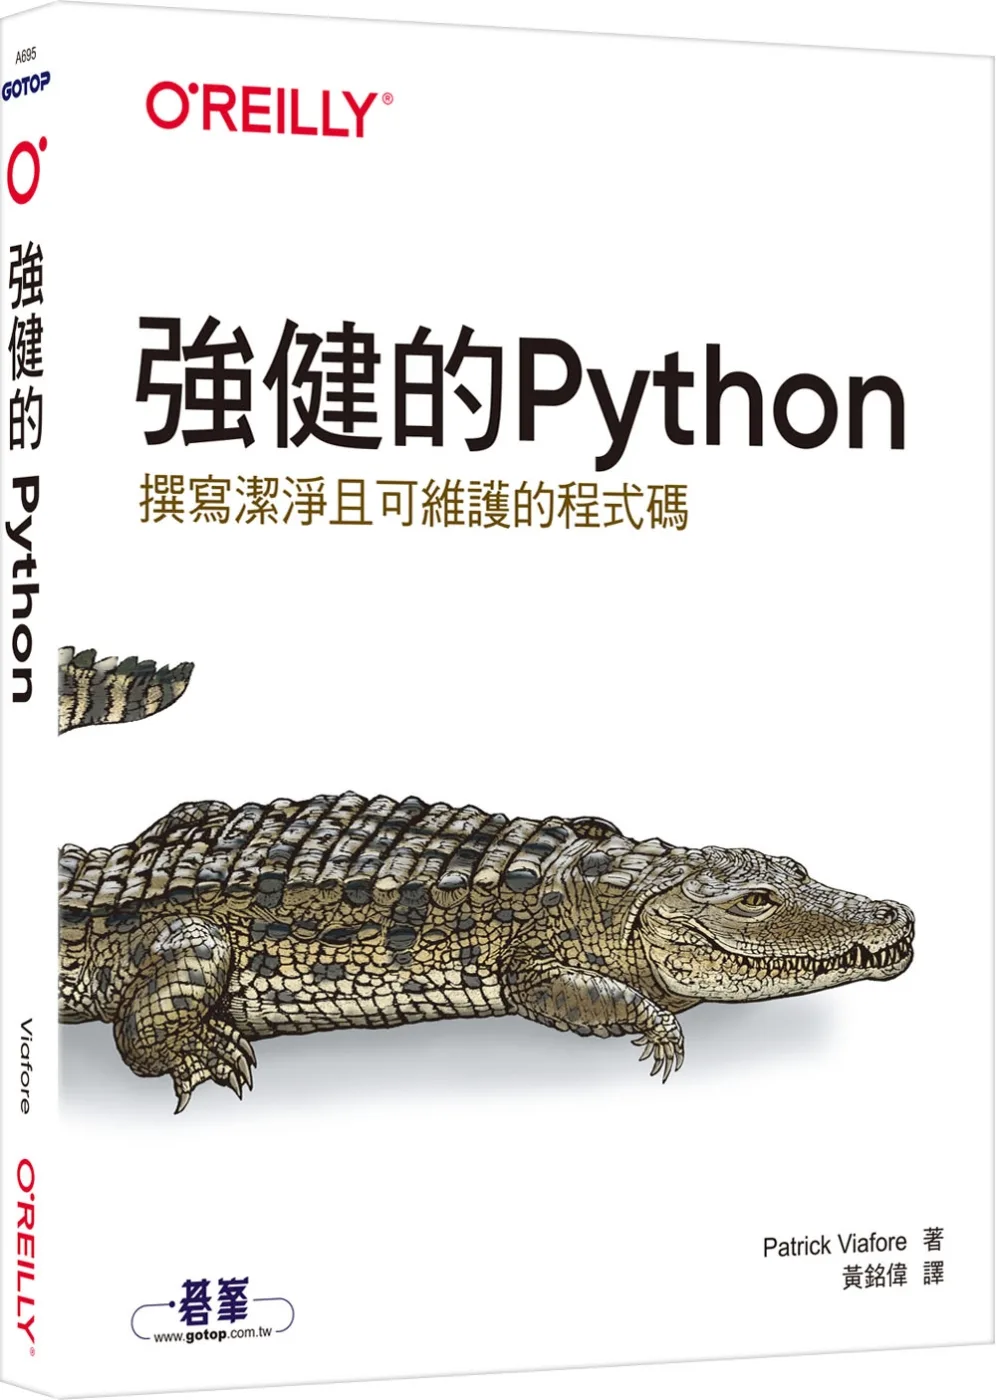 強健的Python｜撰寫潔淨且可維護的程式碼